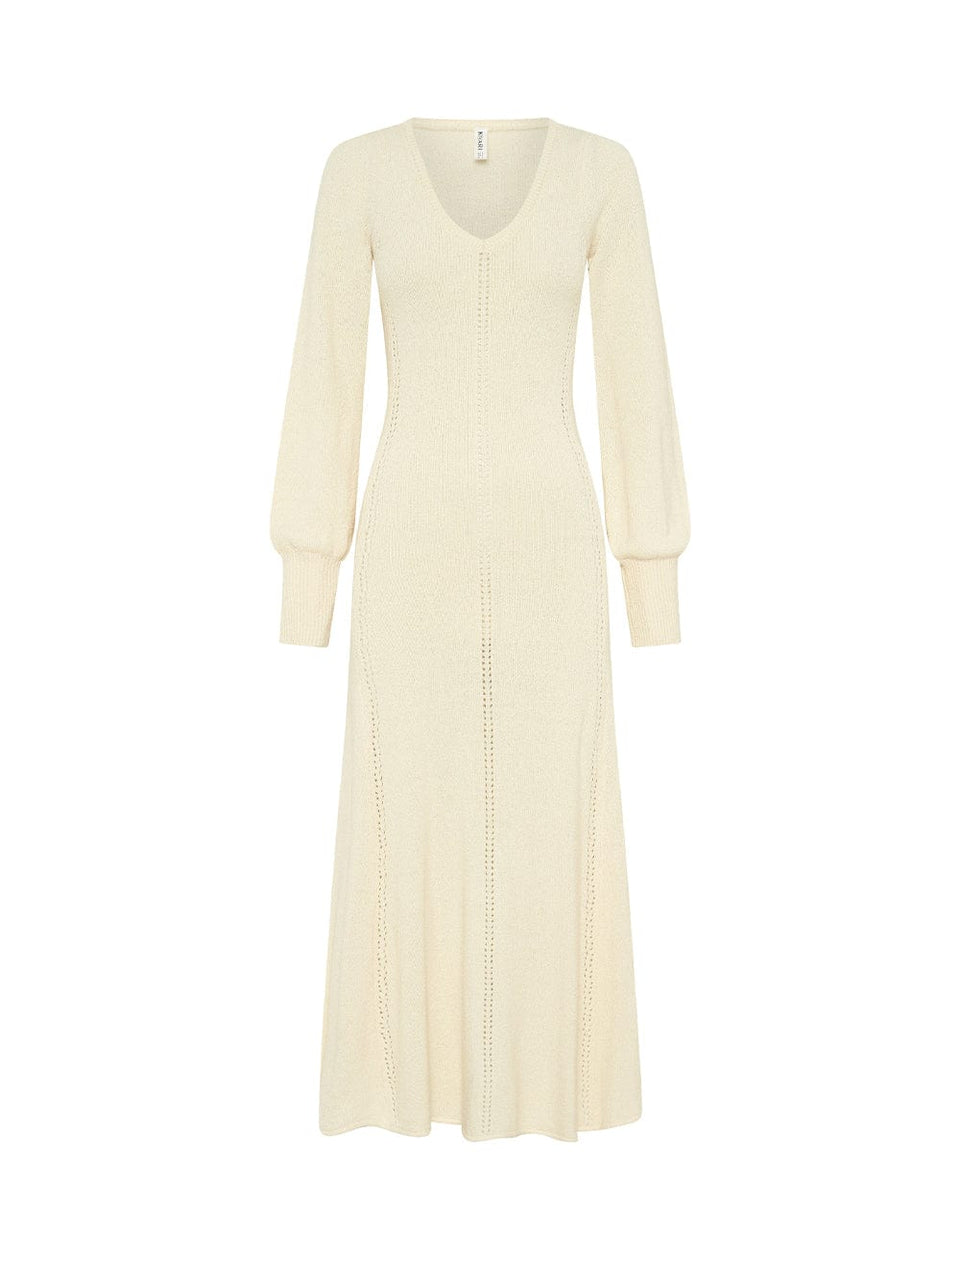 Cali Knit Dress KIVARI | Cream knit midi dress